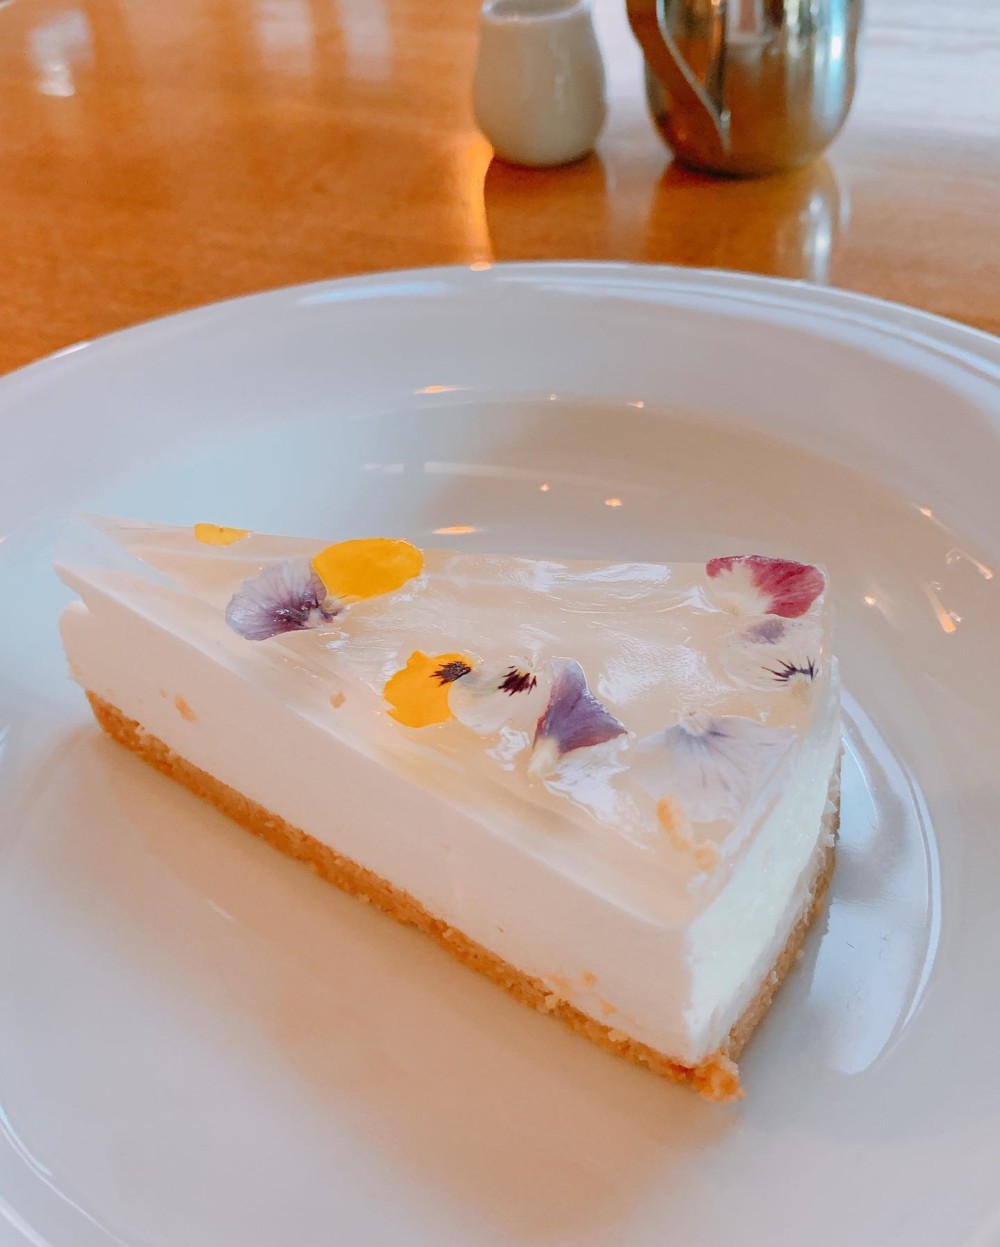 美しすぎるチーズケーキ 福岡 赤坂にあるパッパライライのハーブゼリーレアチーズケーキが美しいと評判 Sweetsvillage スイーツビレッジ